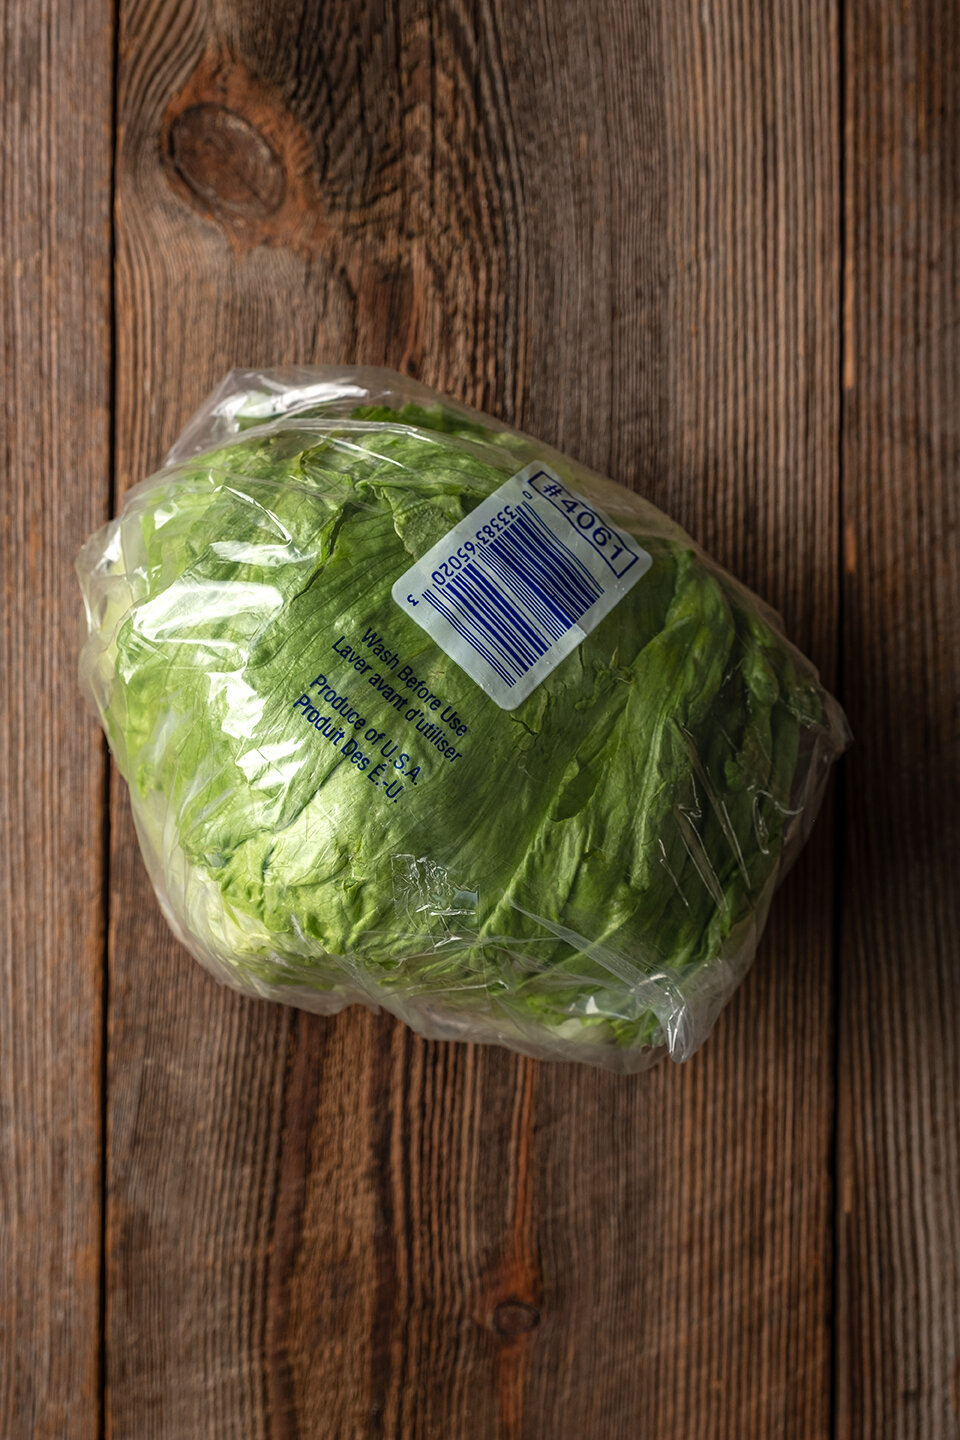 Iceberg lettuce $1.59